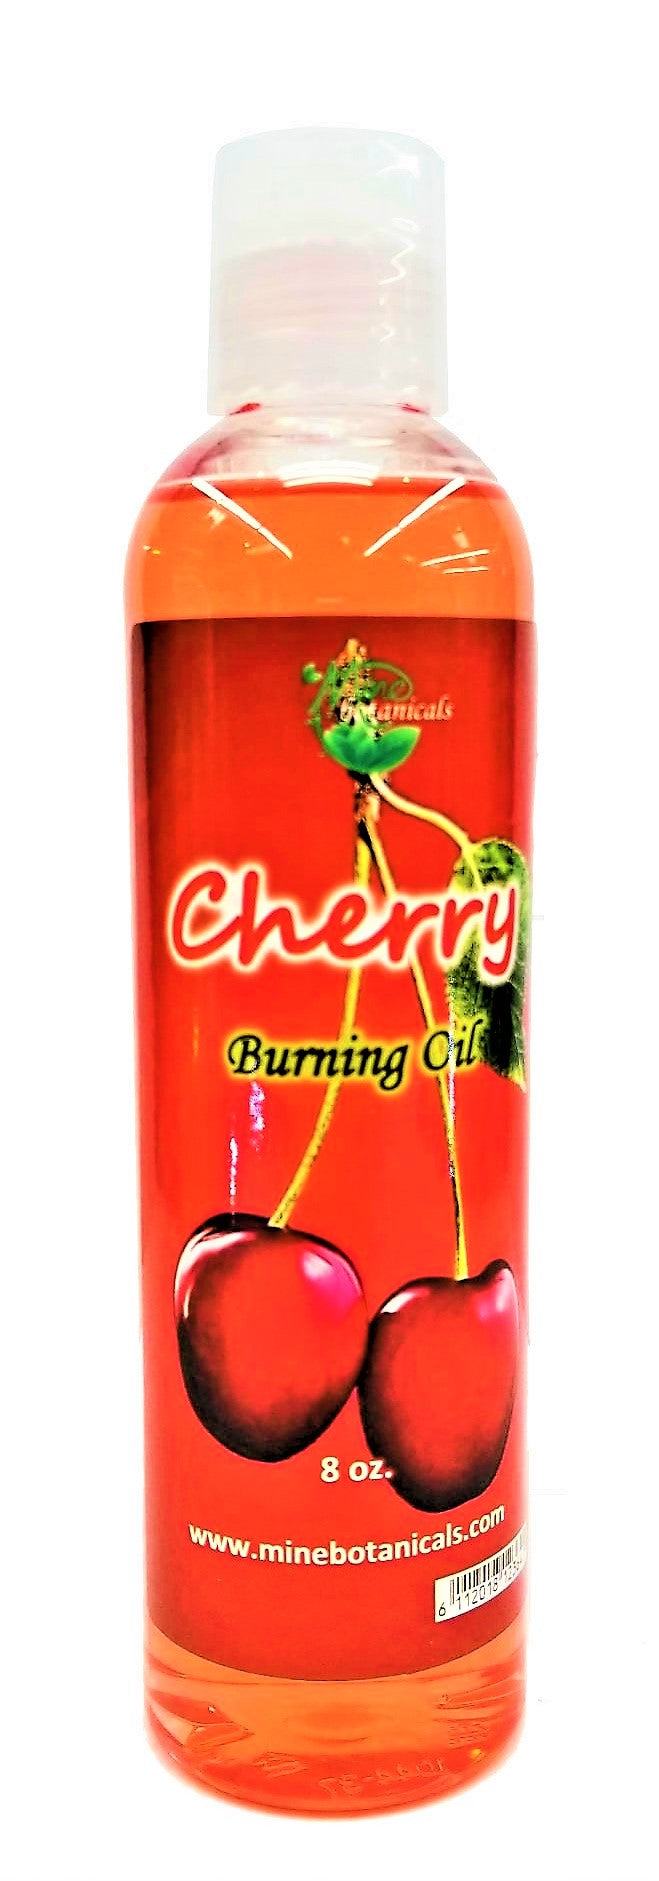 Cherry Burning Oil